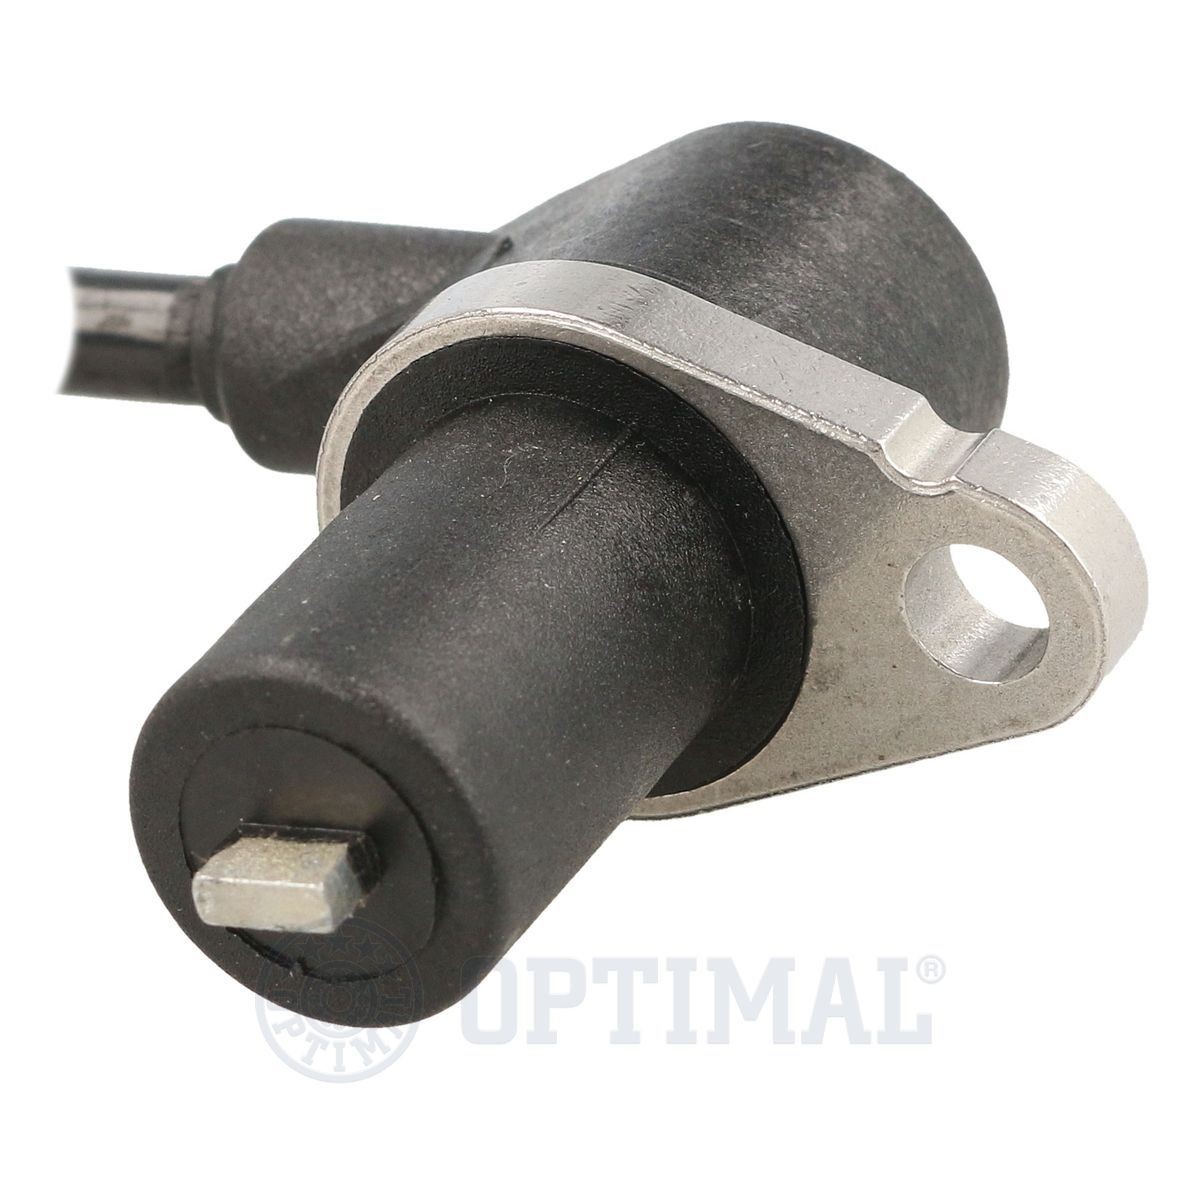 06S281 Anti lock brake sensor OPTIMAL 06-S281 review and test